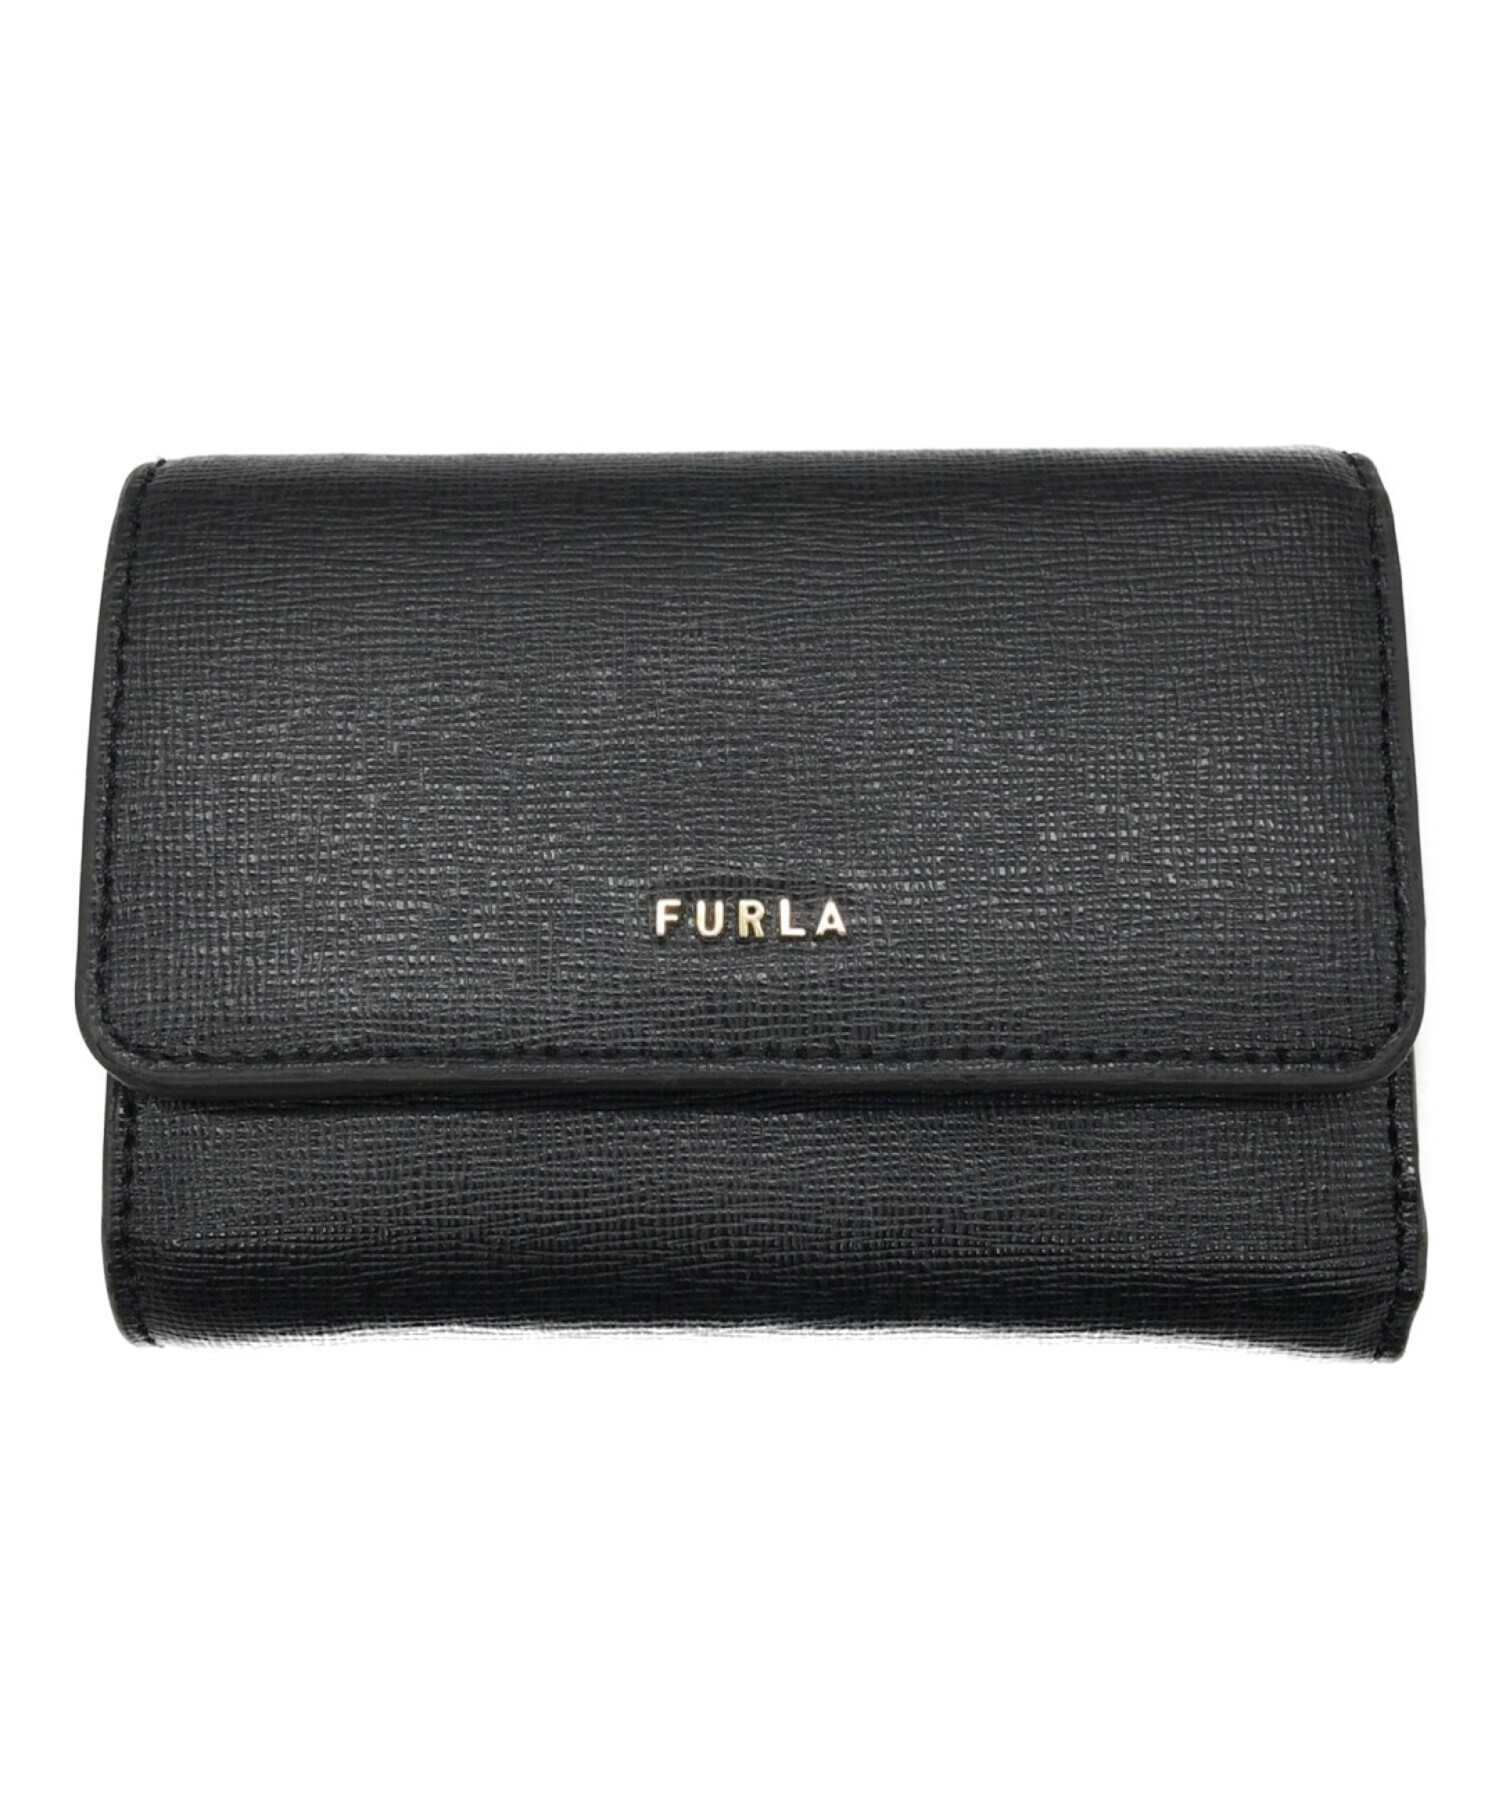 よろしくお願いしますFURLA フルラ 三つ折り 財布 ブラック 黒 未使用 